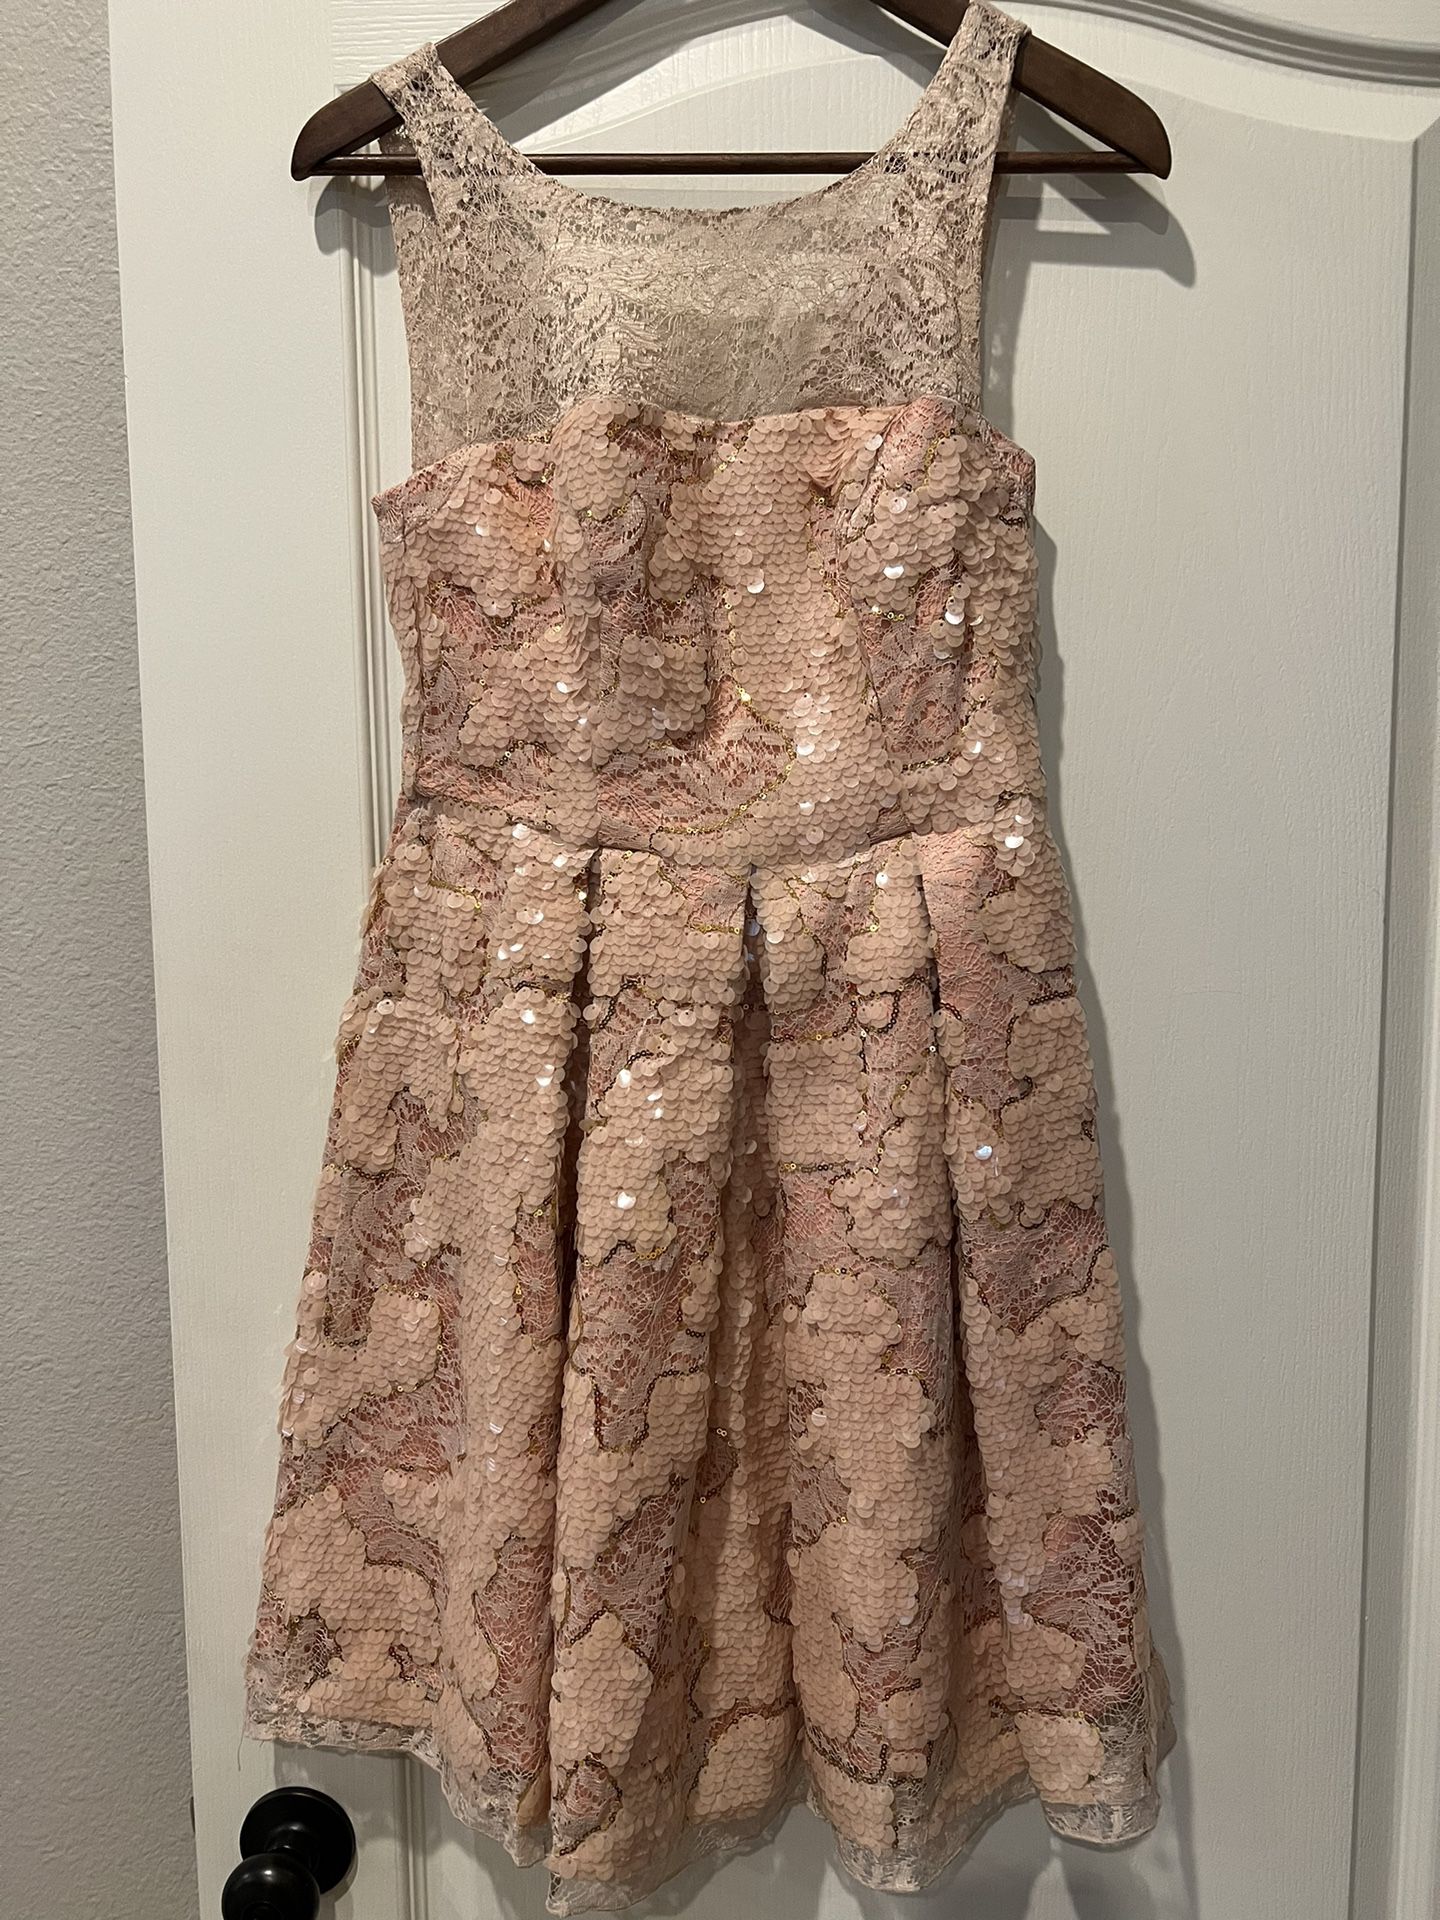 Pink Semiformal Eva Franco Dress